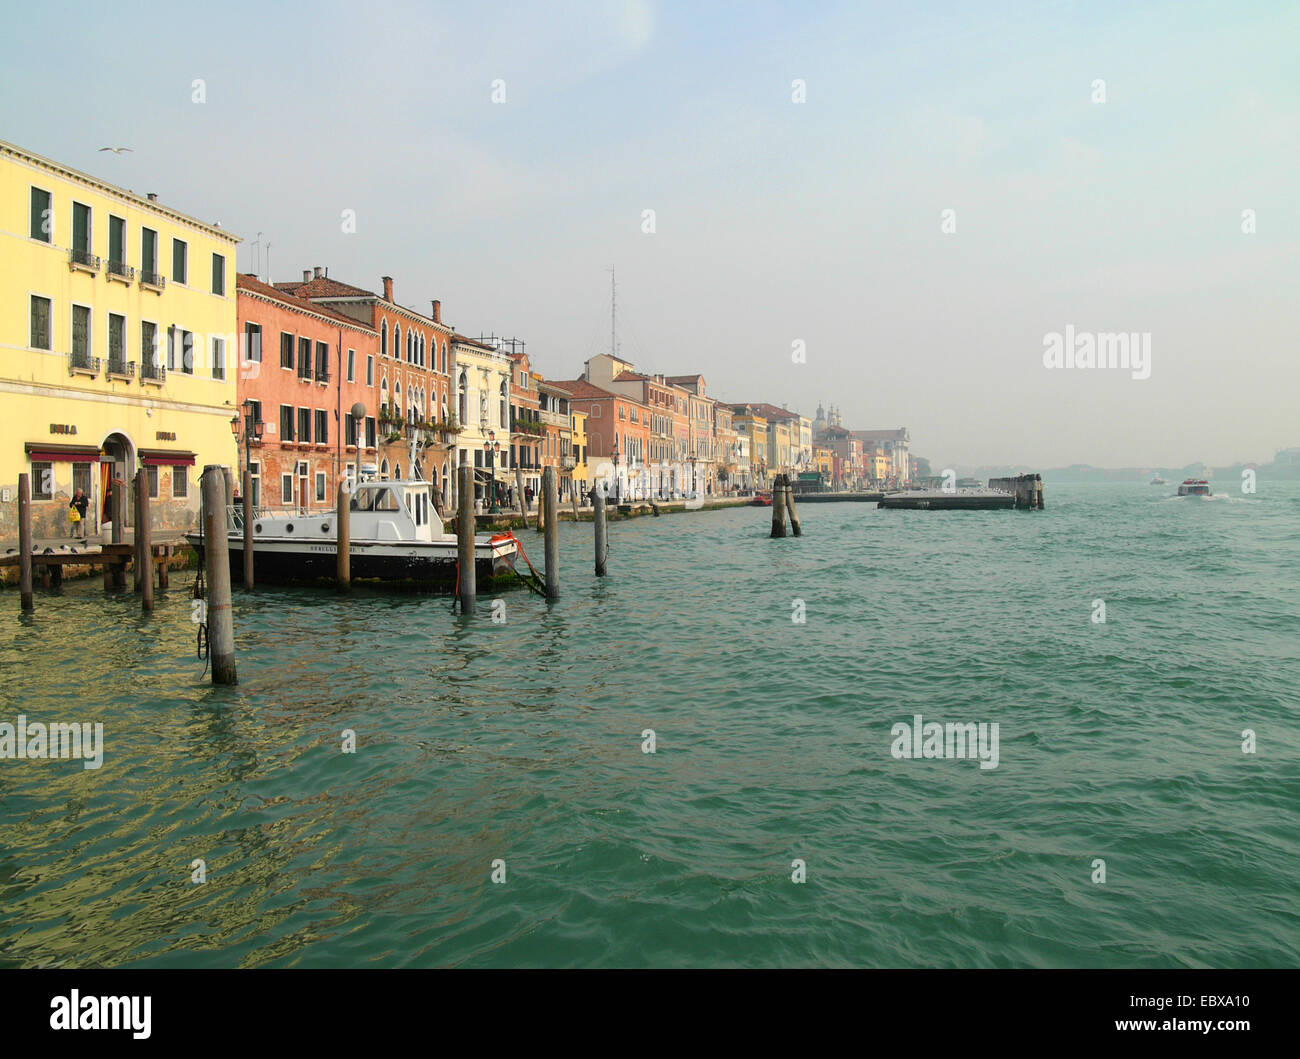 Canale della Giudecca, Italien, Venedig Stockfoto